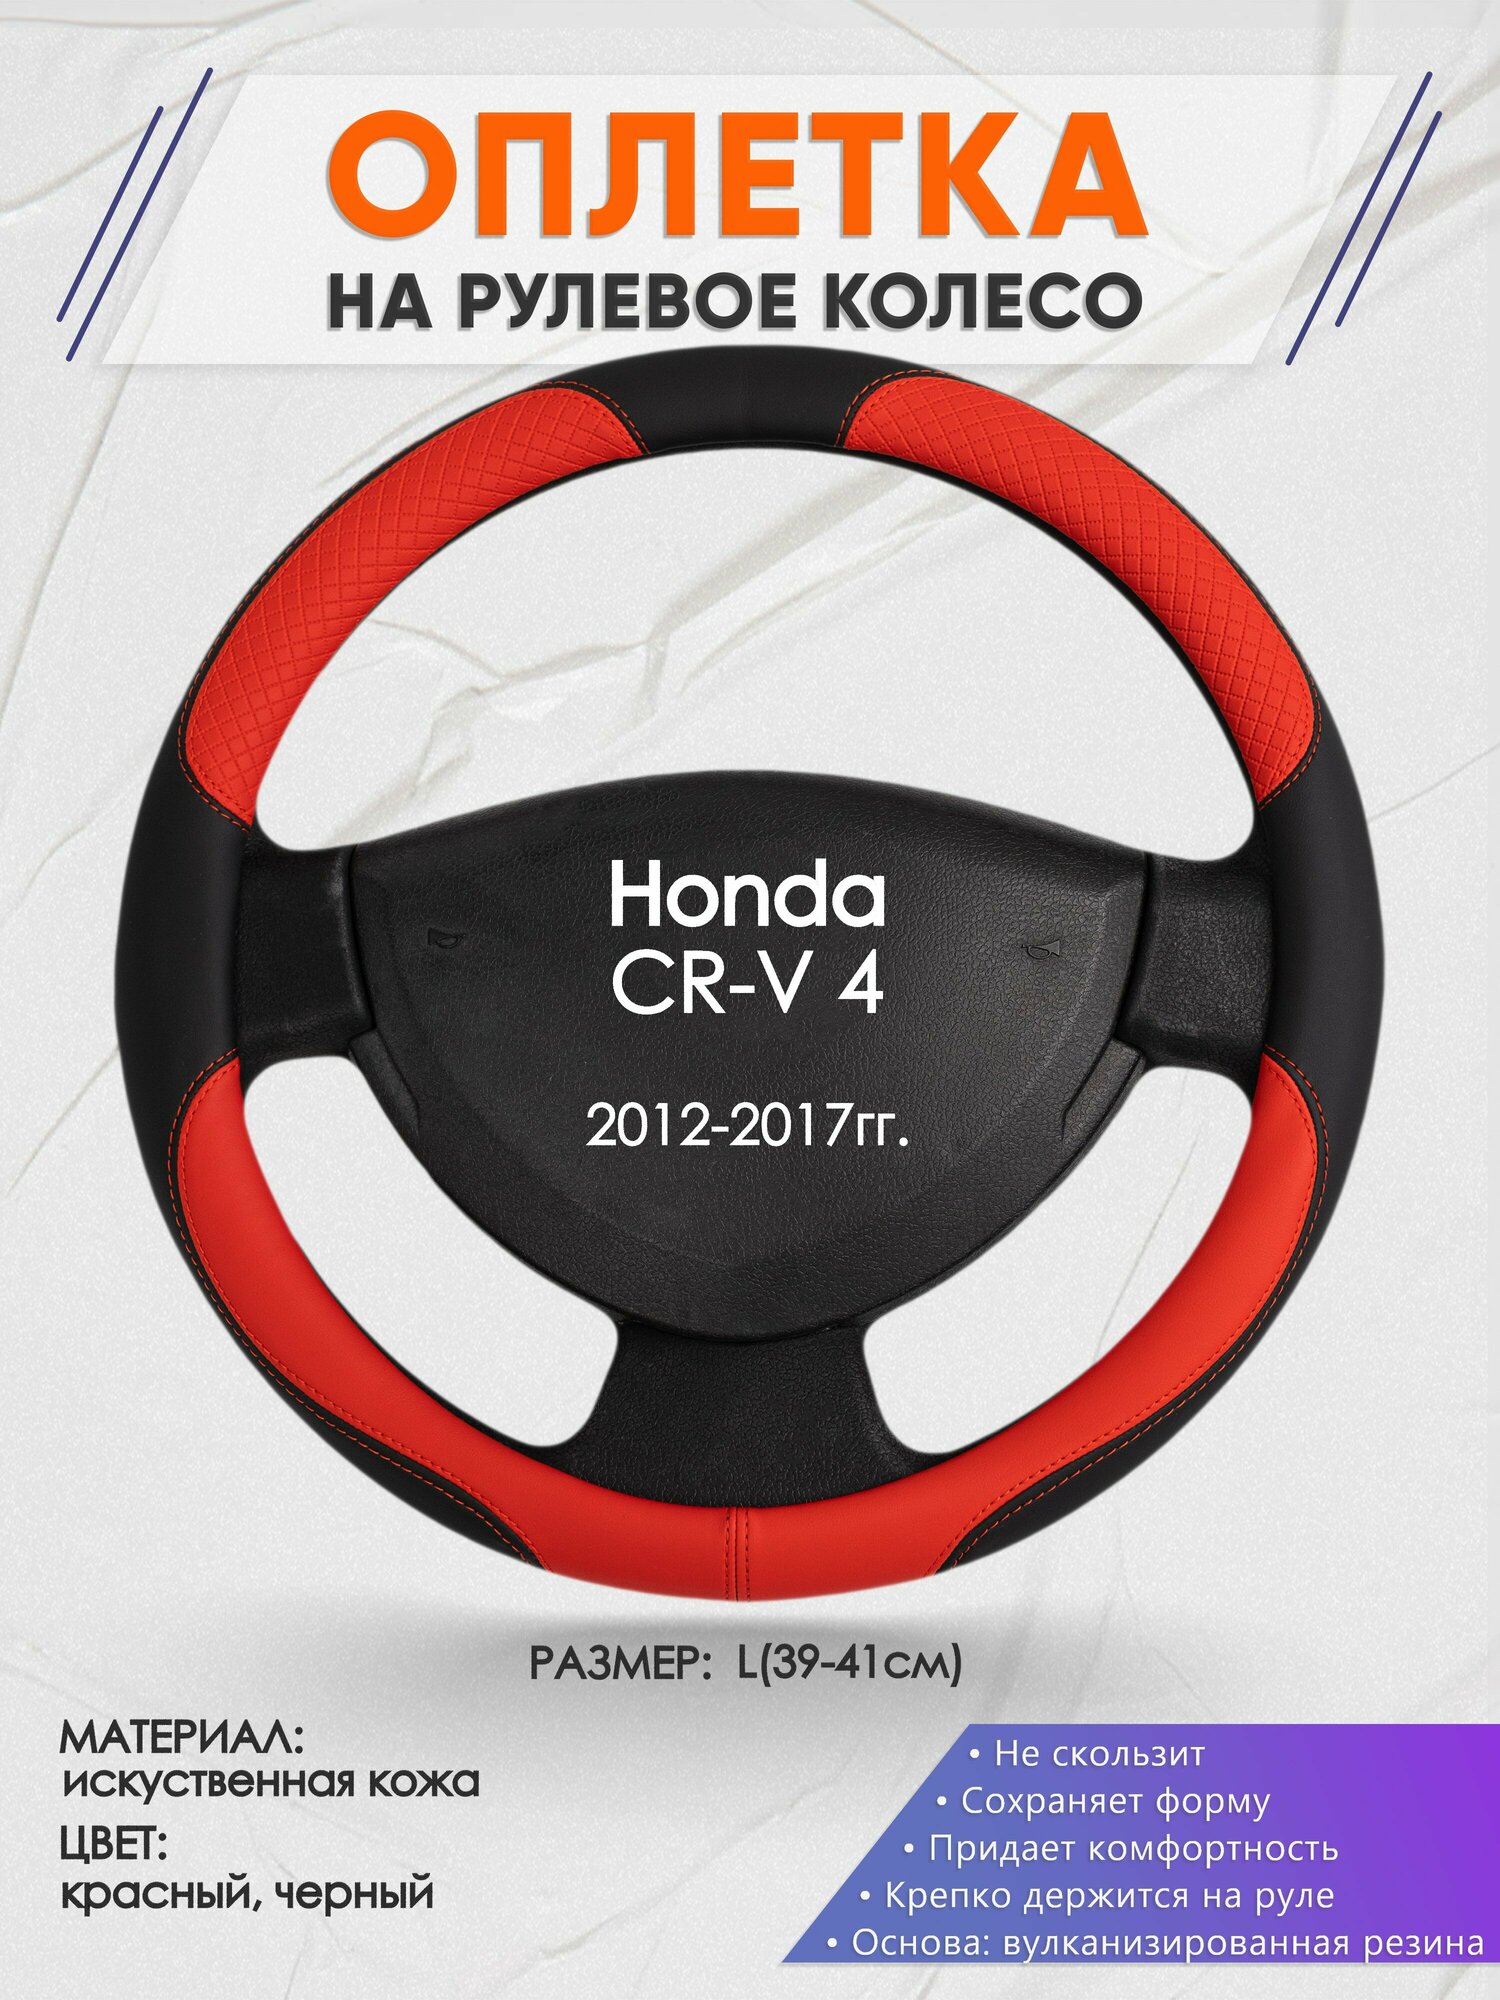 Оплетка на руль для Honda CR-V 4(Хонда срв 4) 2012-2017, L(39-41см), Искусственная кожа 05